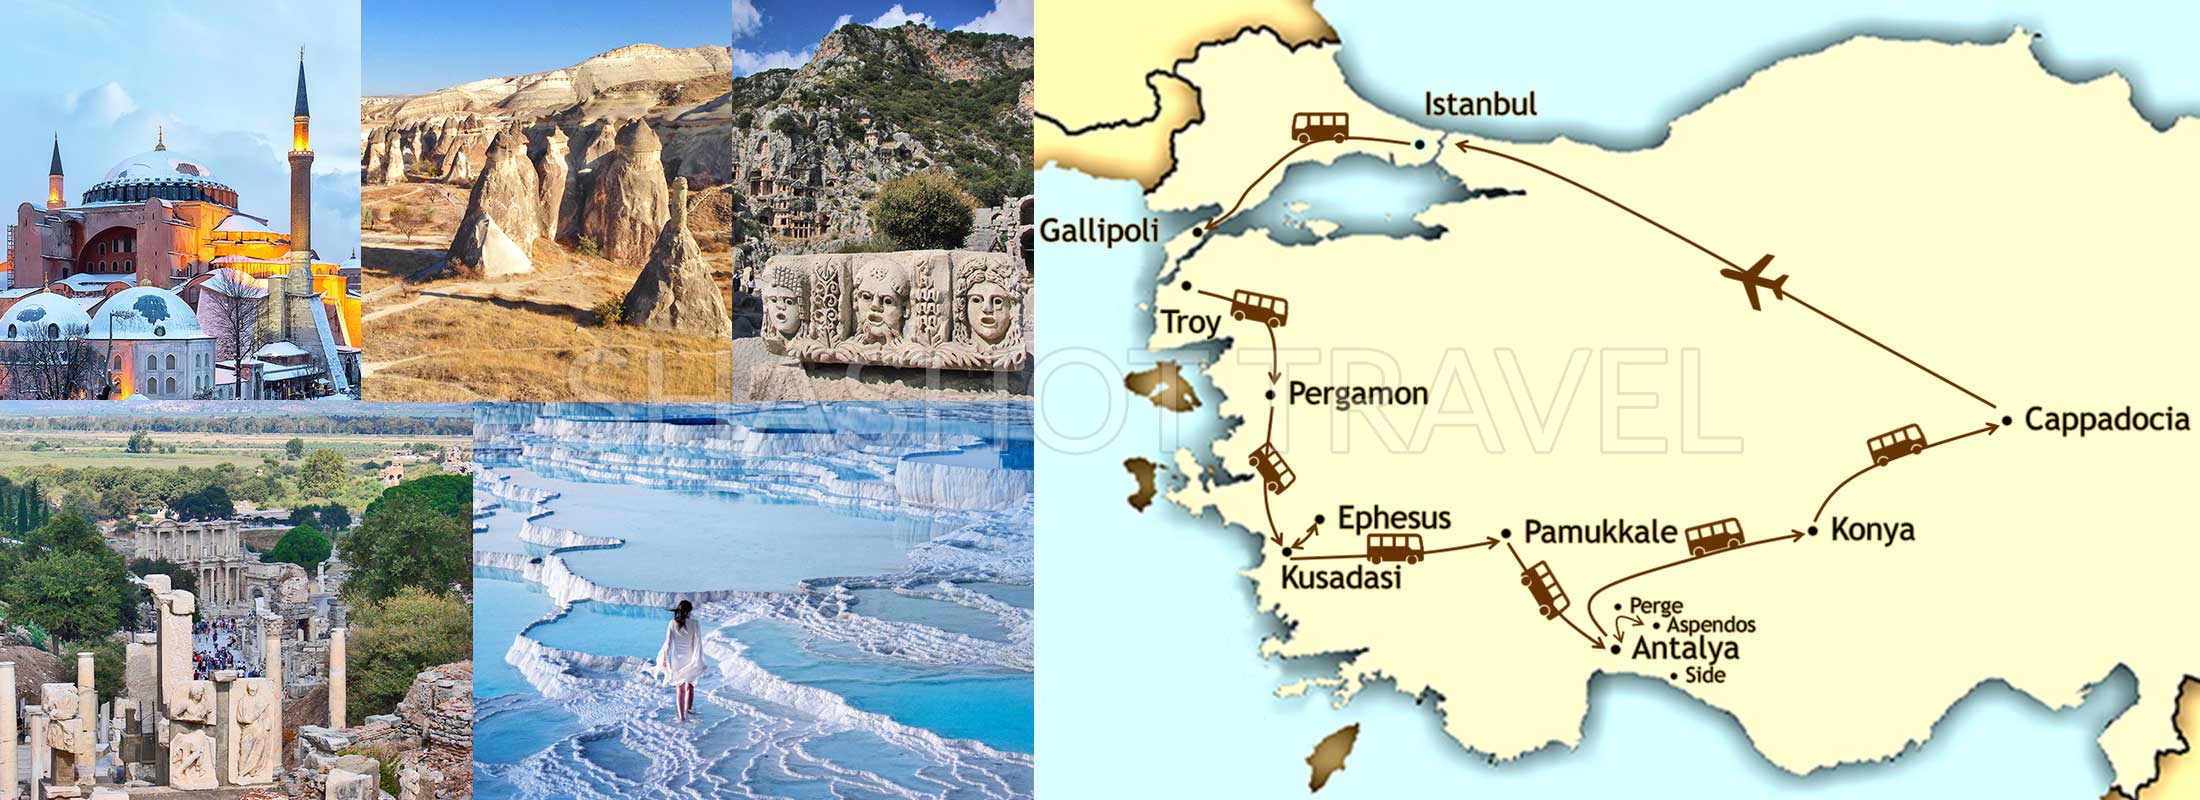 14-DIAS-EXCURSION-EN-TURQUIA-ESTAMBUL-GALIPOLI-TROYA-PERGAMO-PAMUKKALE-EFESO-ANTALYA-KONYA-CAPADOCIA-shashot-travel-map